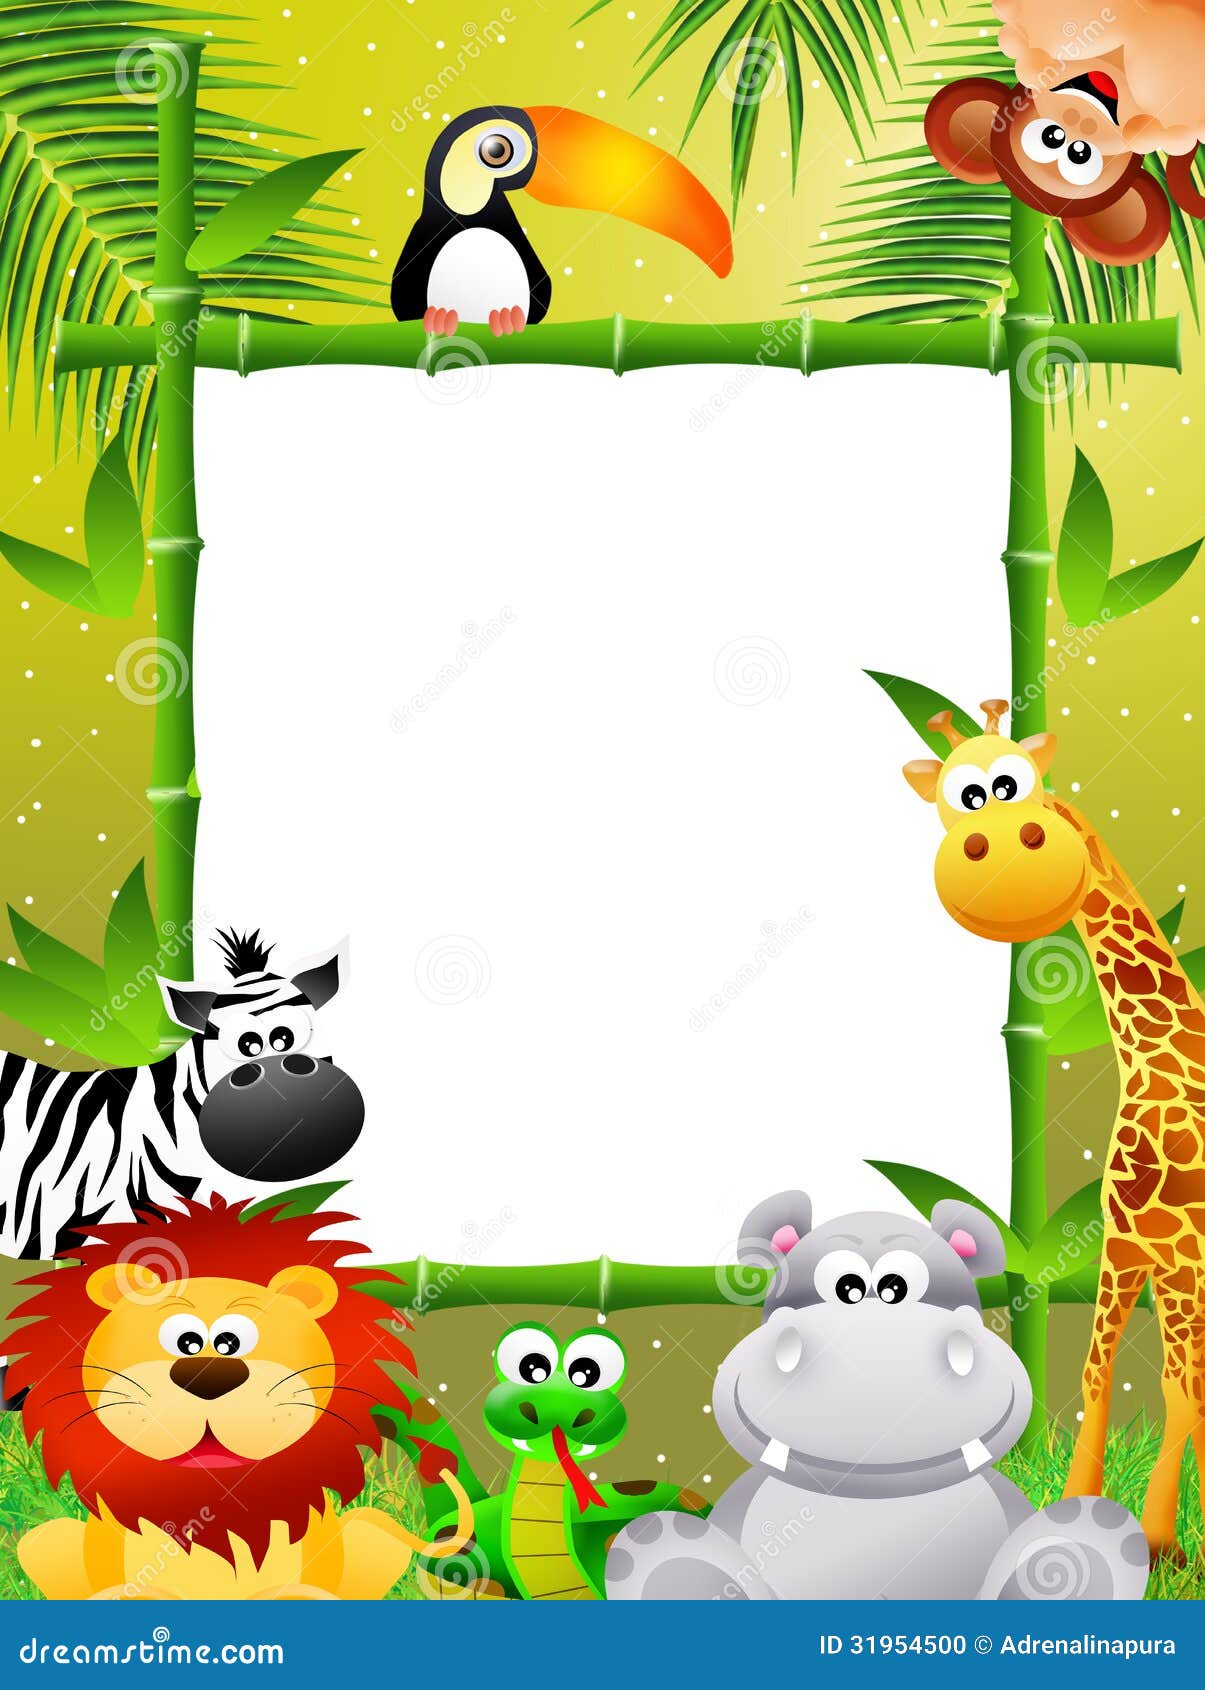 Wild animals cartoon stock illustration. Illustration of tree - 31954500